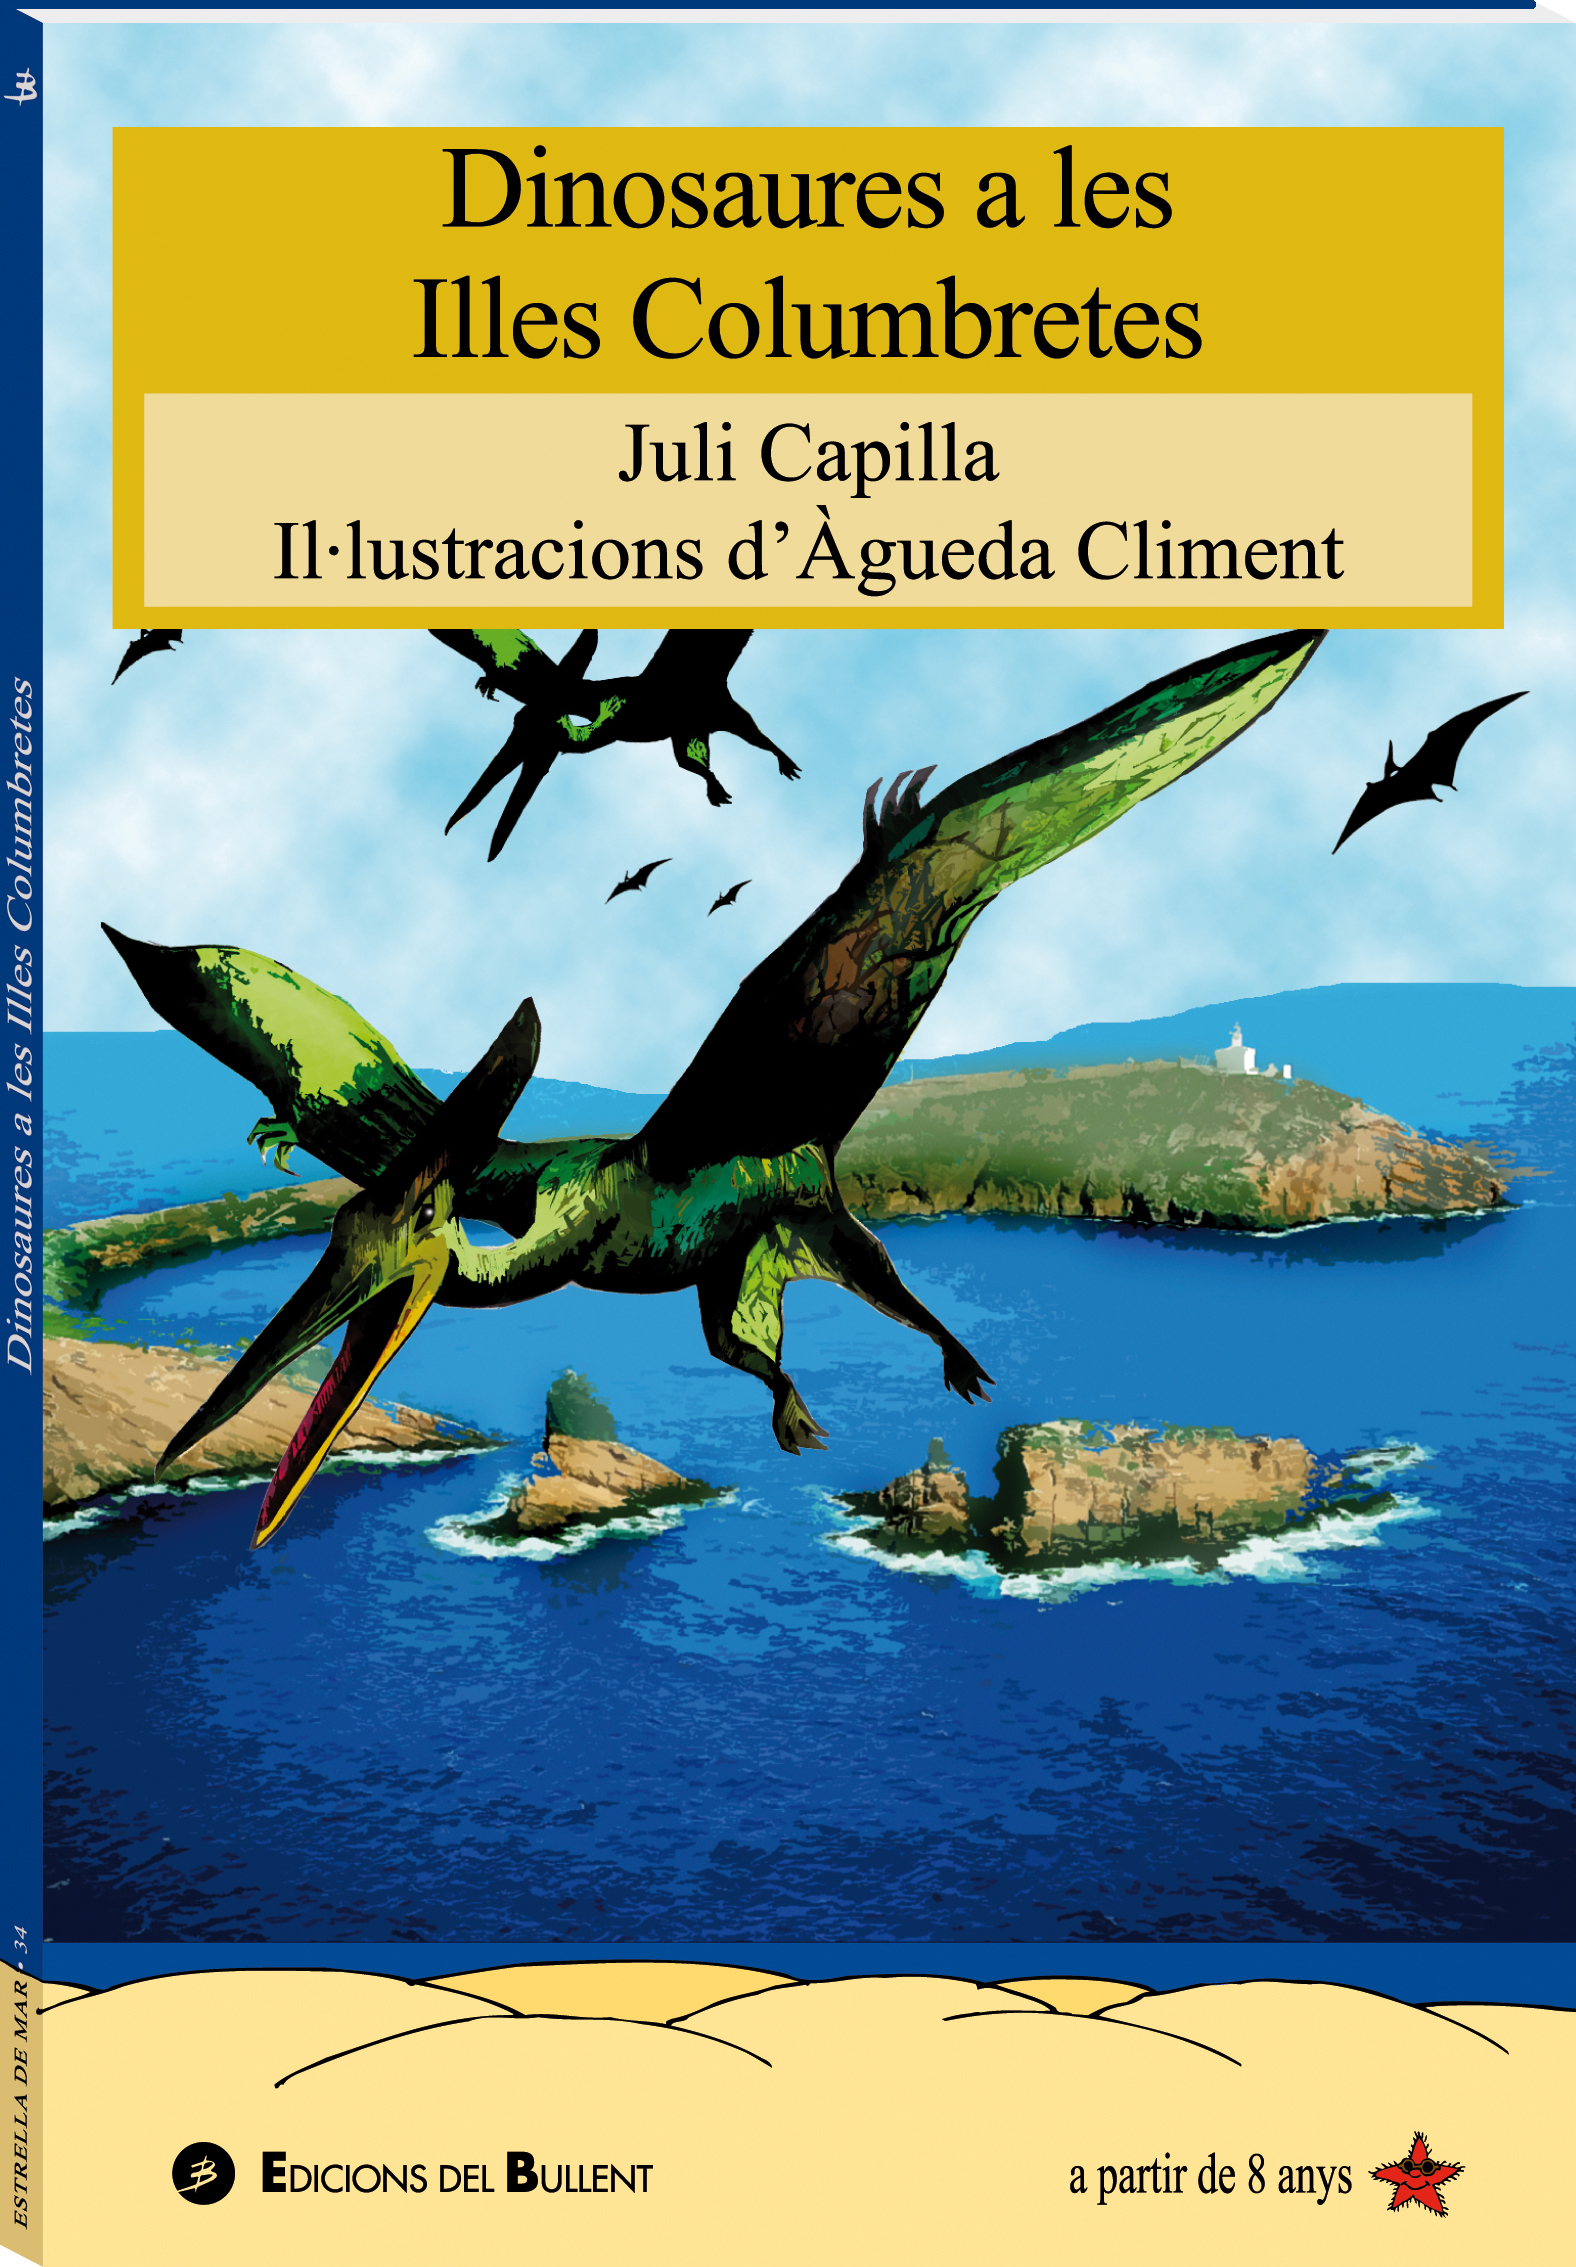 Dinosaures a les Illes Columbretes